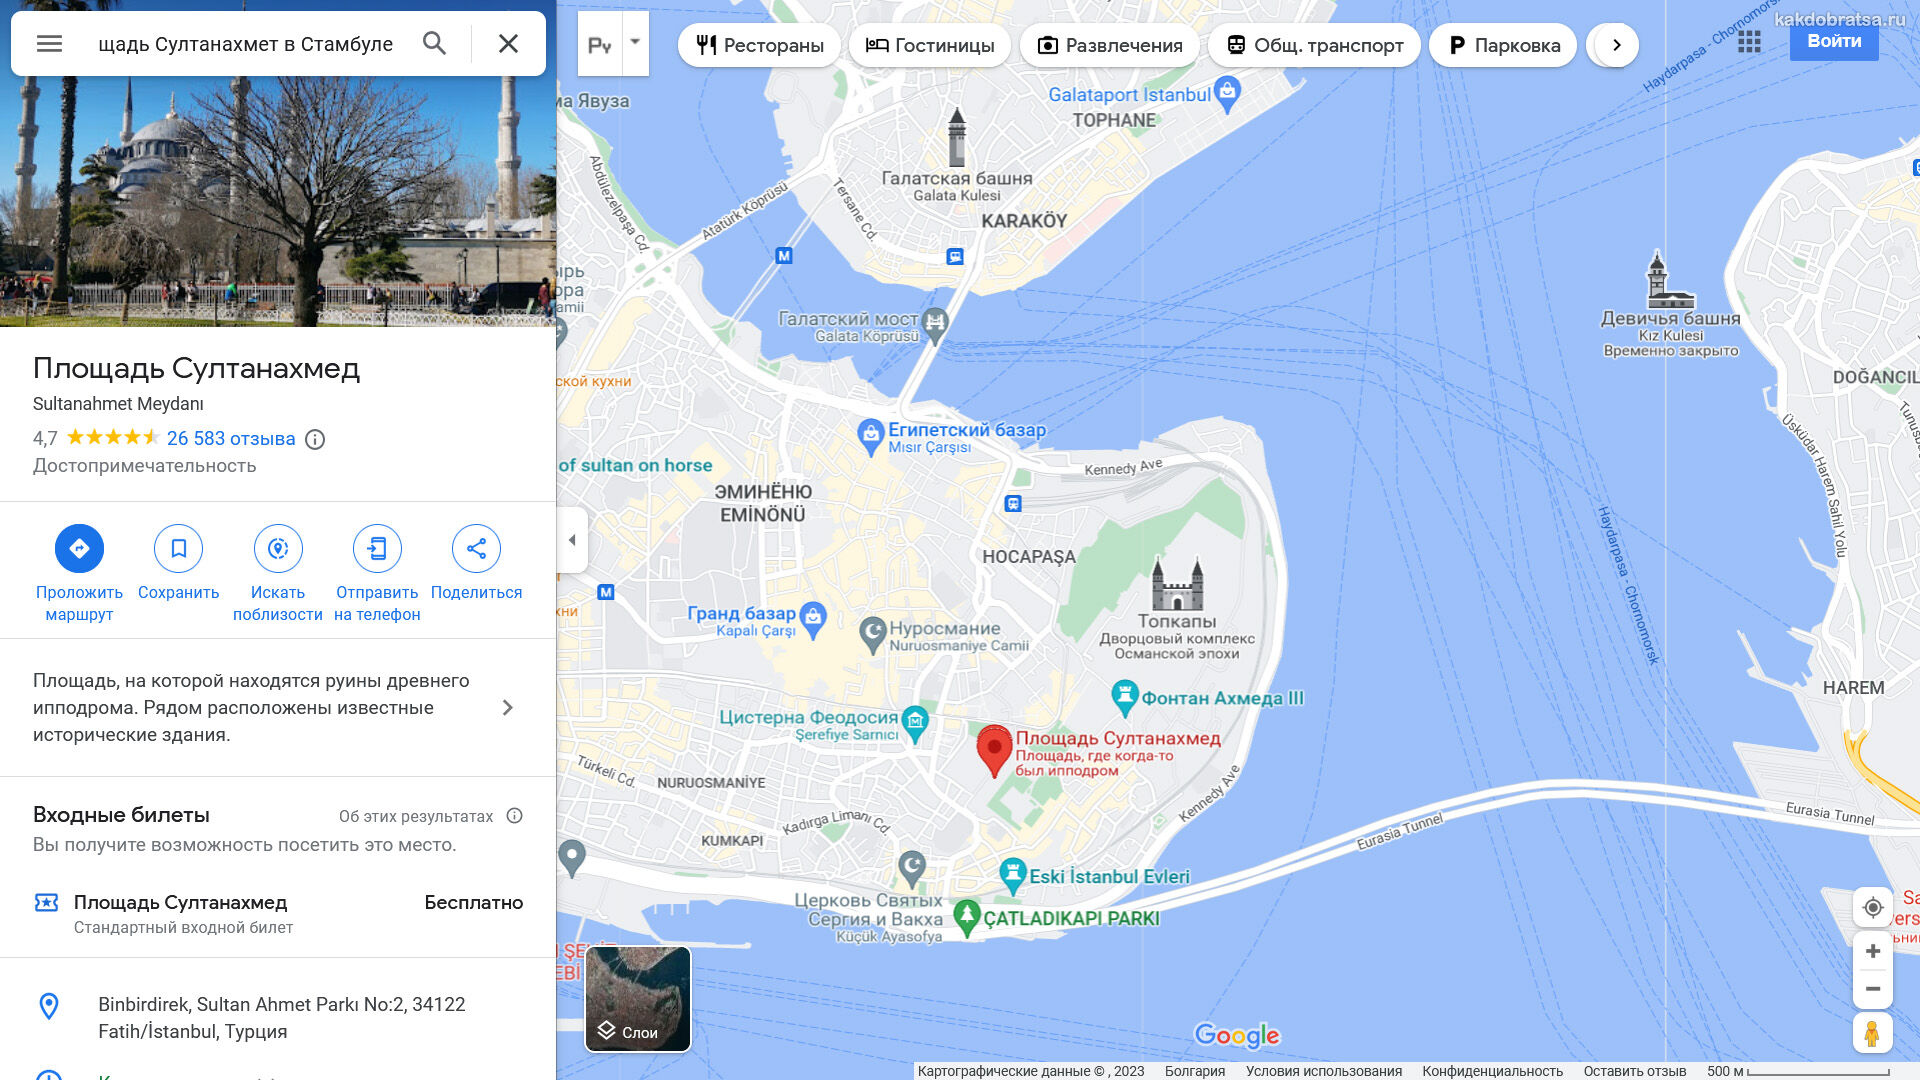 Аэропорт султанахмет как добраться. Площадь Султанахмет в Стамбуле на карте. Туристическая схема площади Султанахмет. Как добраться с Султанахмет до Балат. Пристань Эмигран как добраться из Султанахмет.